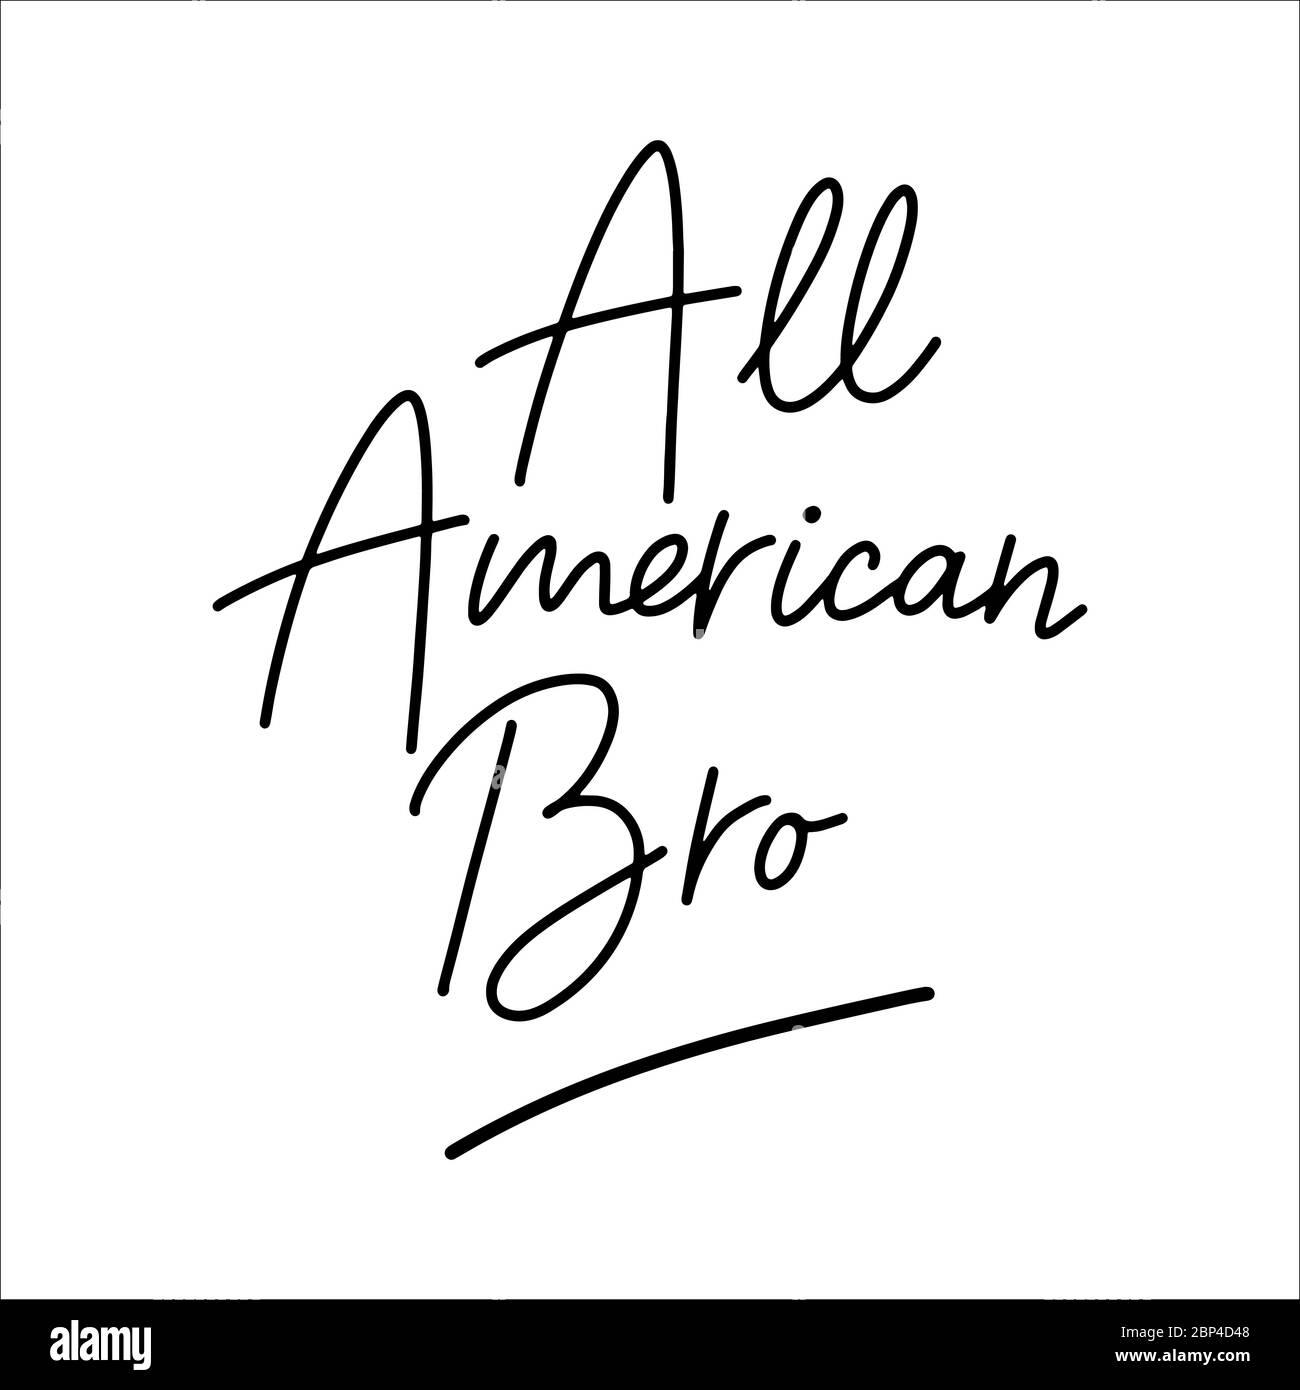 Citation de 'All american bro', isolée. lettrage du 4 juillet Illustration de Vecteur